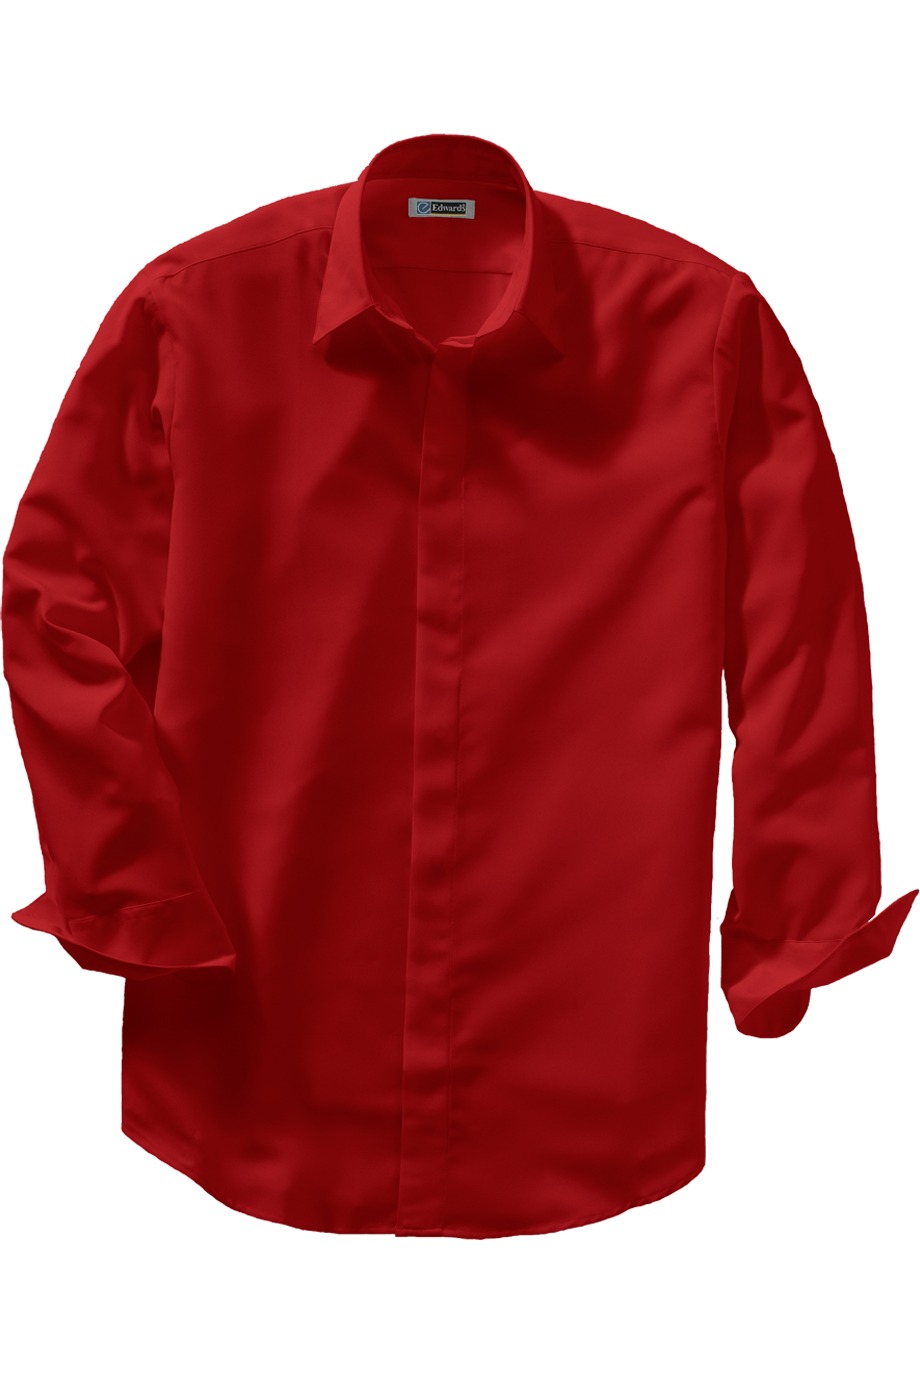 Edwards Garment 1291 - Batiste Cafe Shirt